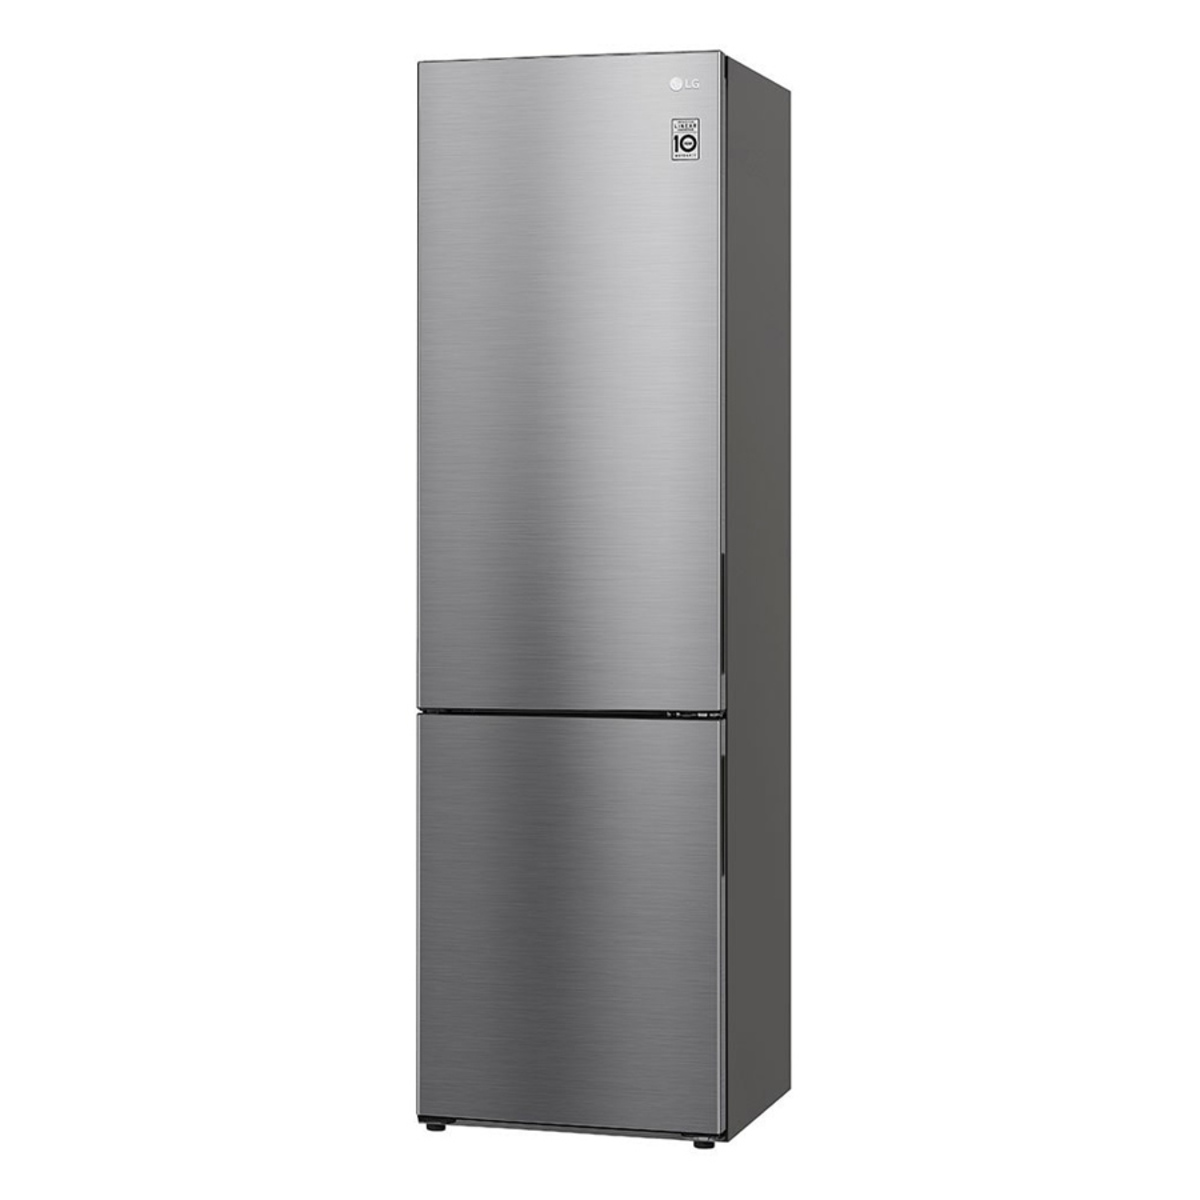 LG GBP62PZNBC B Rated 384L 60cm Tall Fridge Freezer, Stainless steel